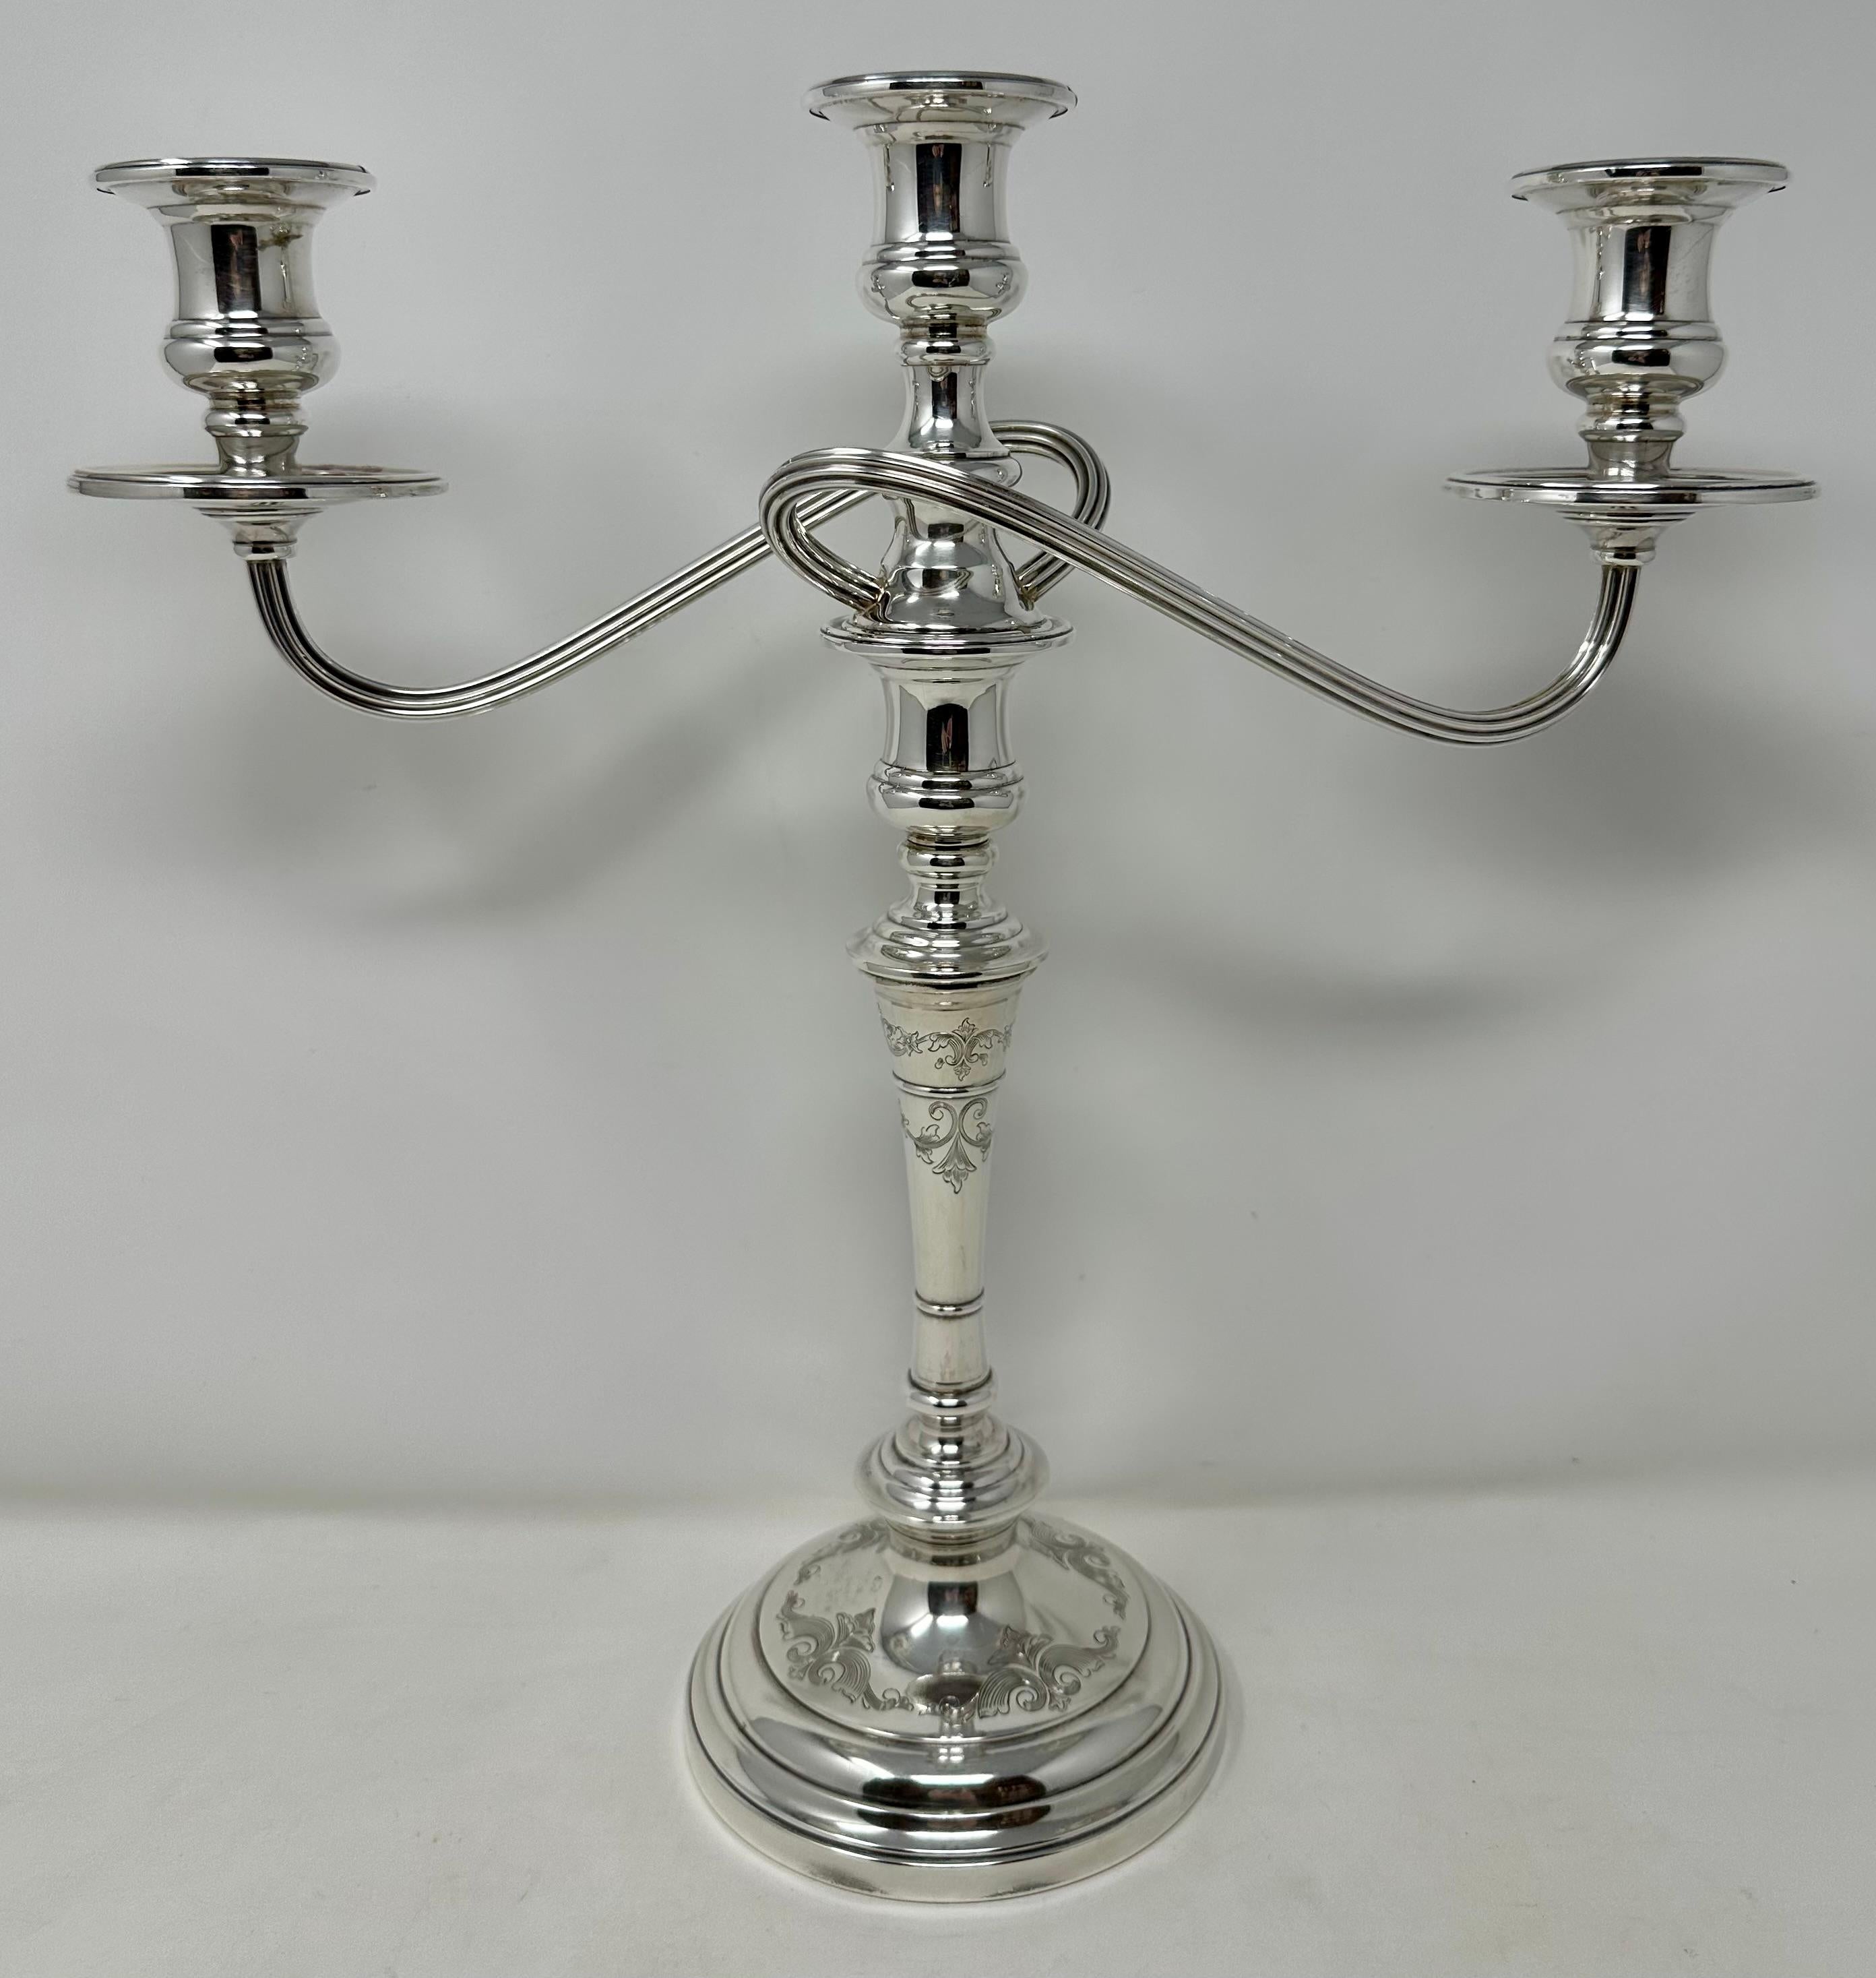 Estate American Sterling Silber gestempelt Convertible Candelabra, CIRCA 1950's.
Kann von einem 3-Tassen-Kandelaber in einen Ein-Tassen-Kerzenleuchter umgewandelt werden.